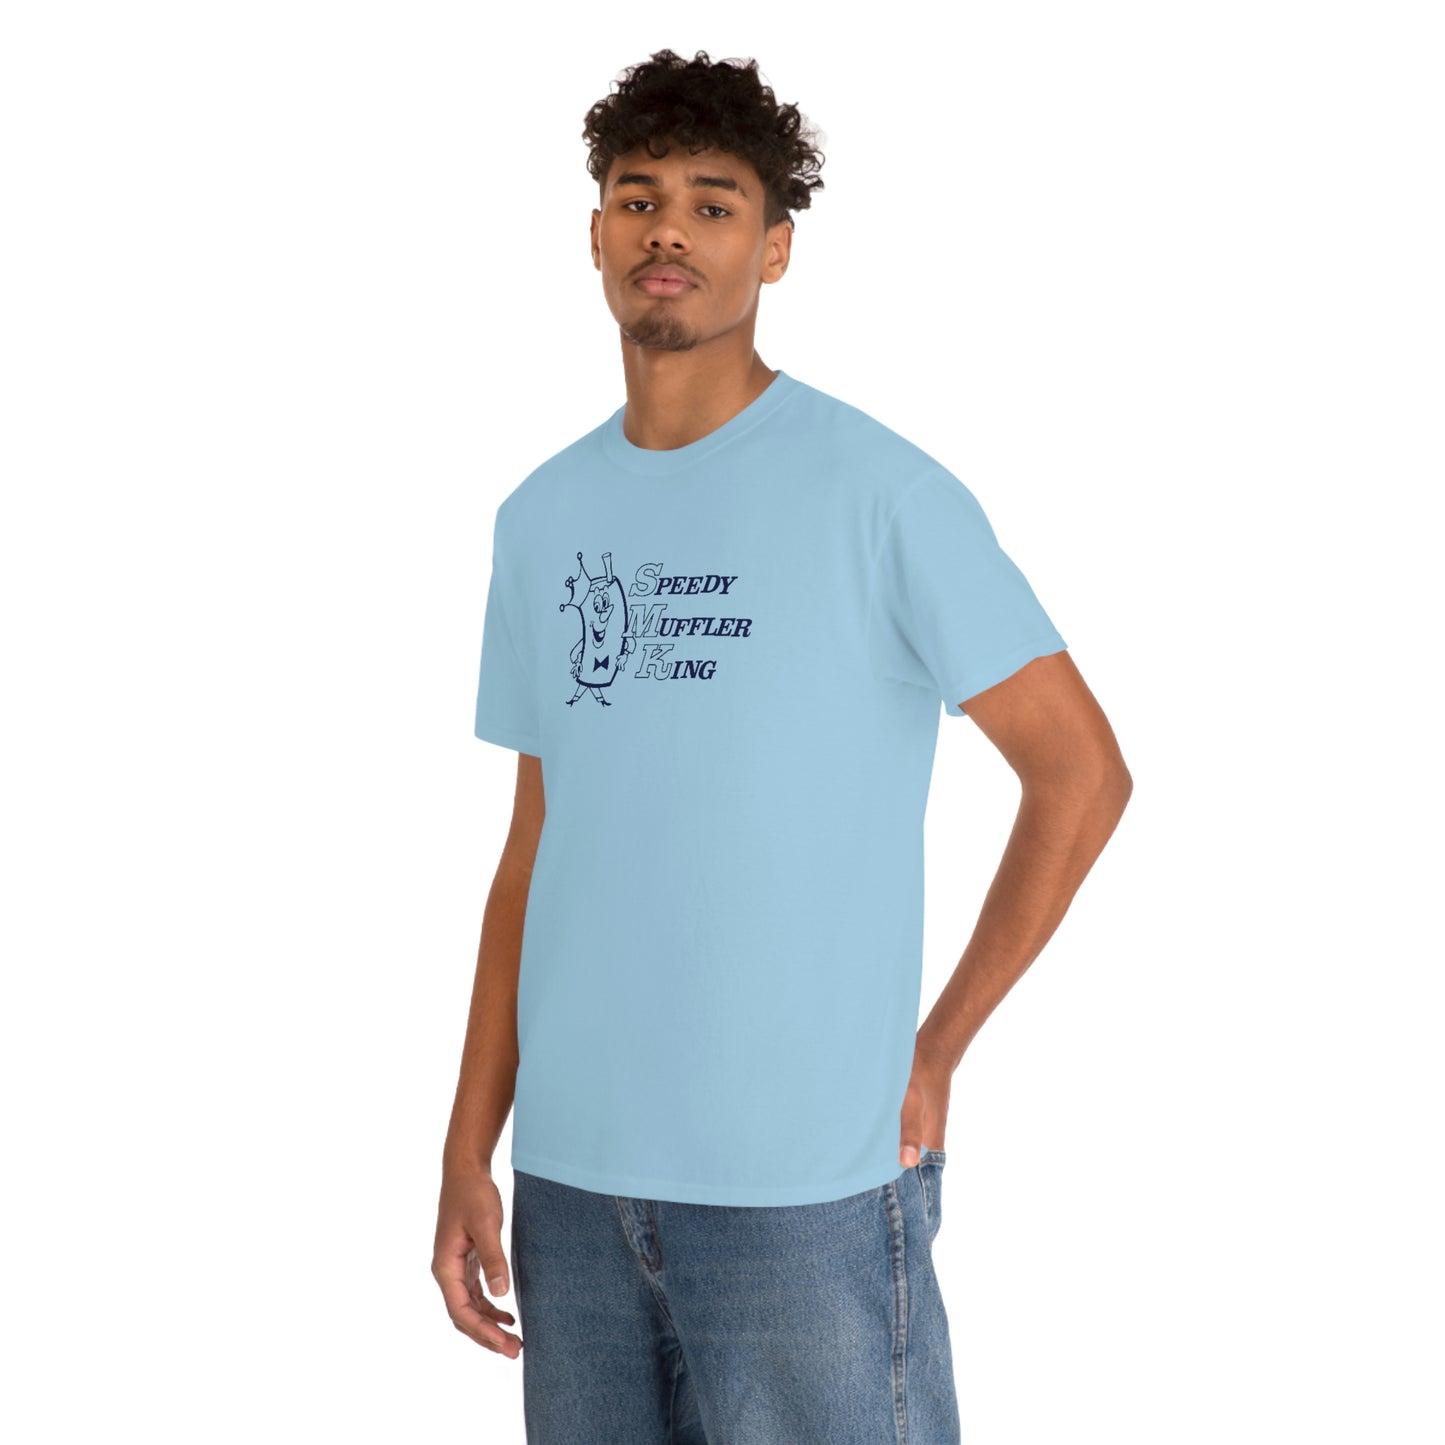 Speedy Muffler King T-Shirt